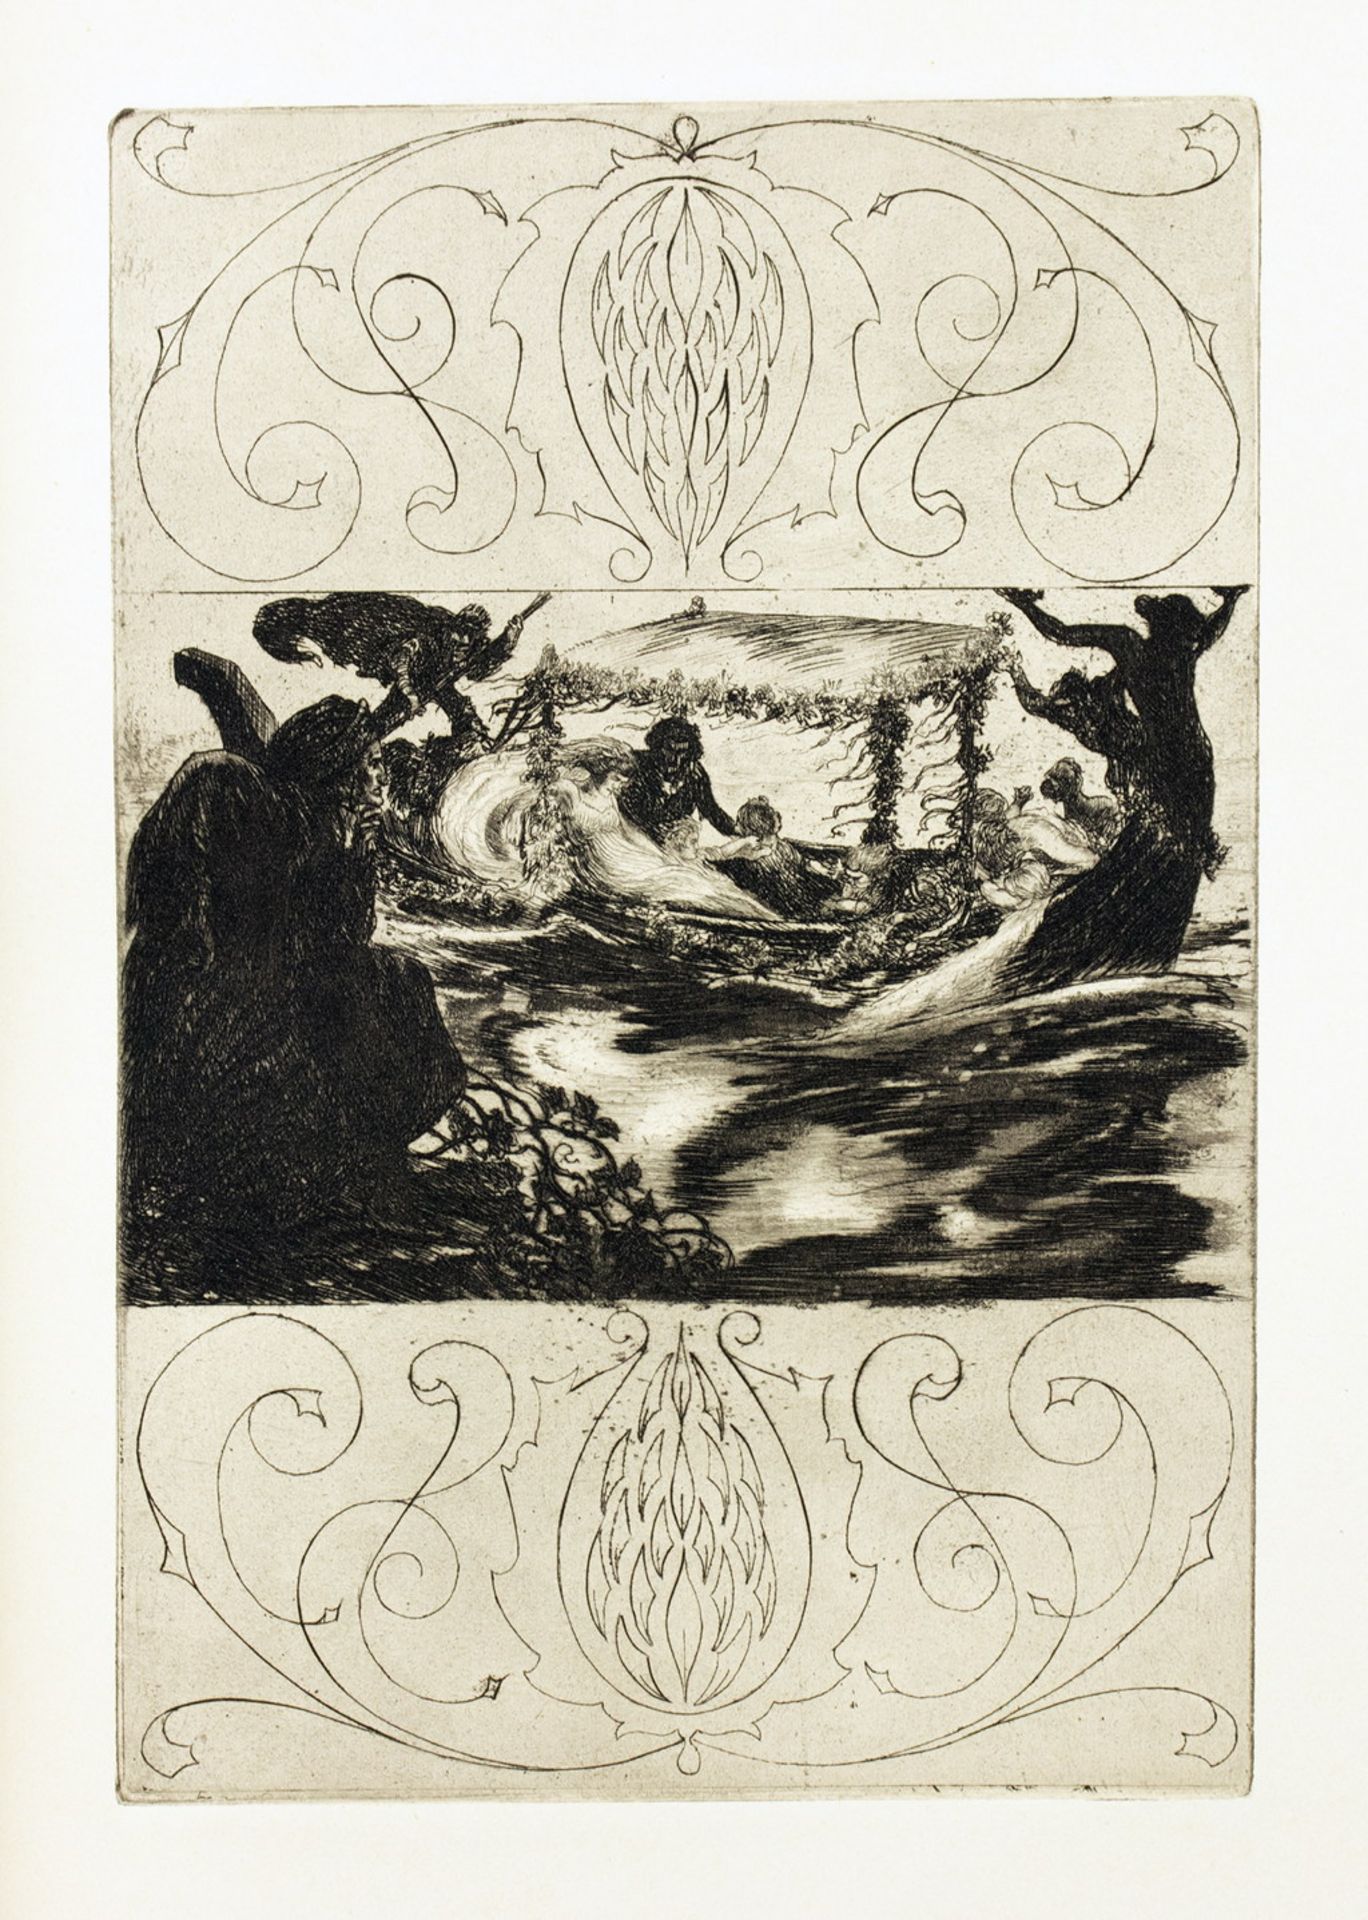 Avalundrucke - Zwei Drucke mit Radierungen von Alois Kolb. 1921 - Image 4 of 5